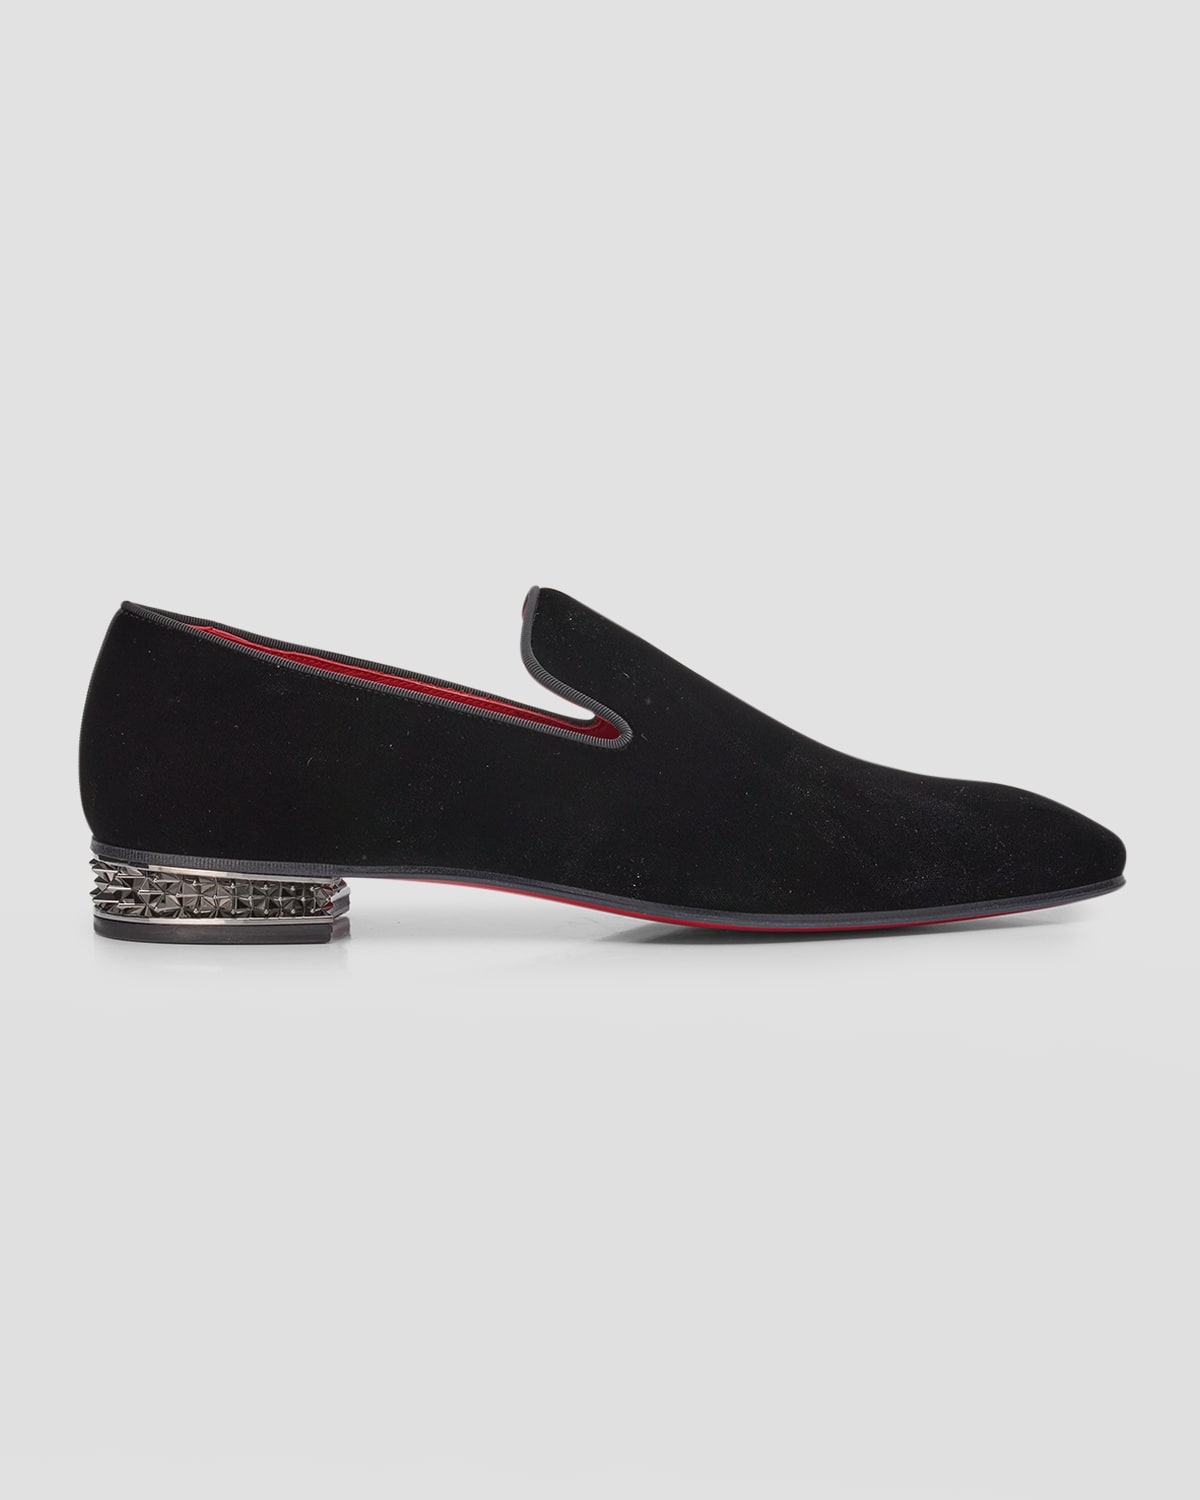 Christian Louboutin Men's Dandyrocks Spike-heel Velvet Loafers In Black/lin Loubi